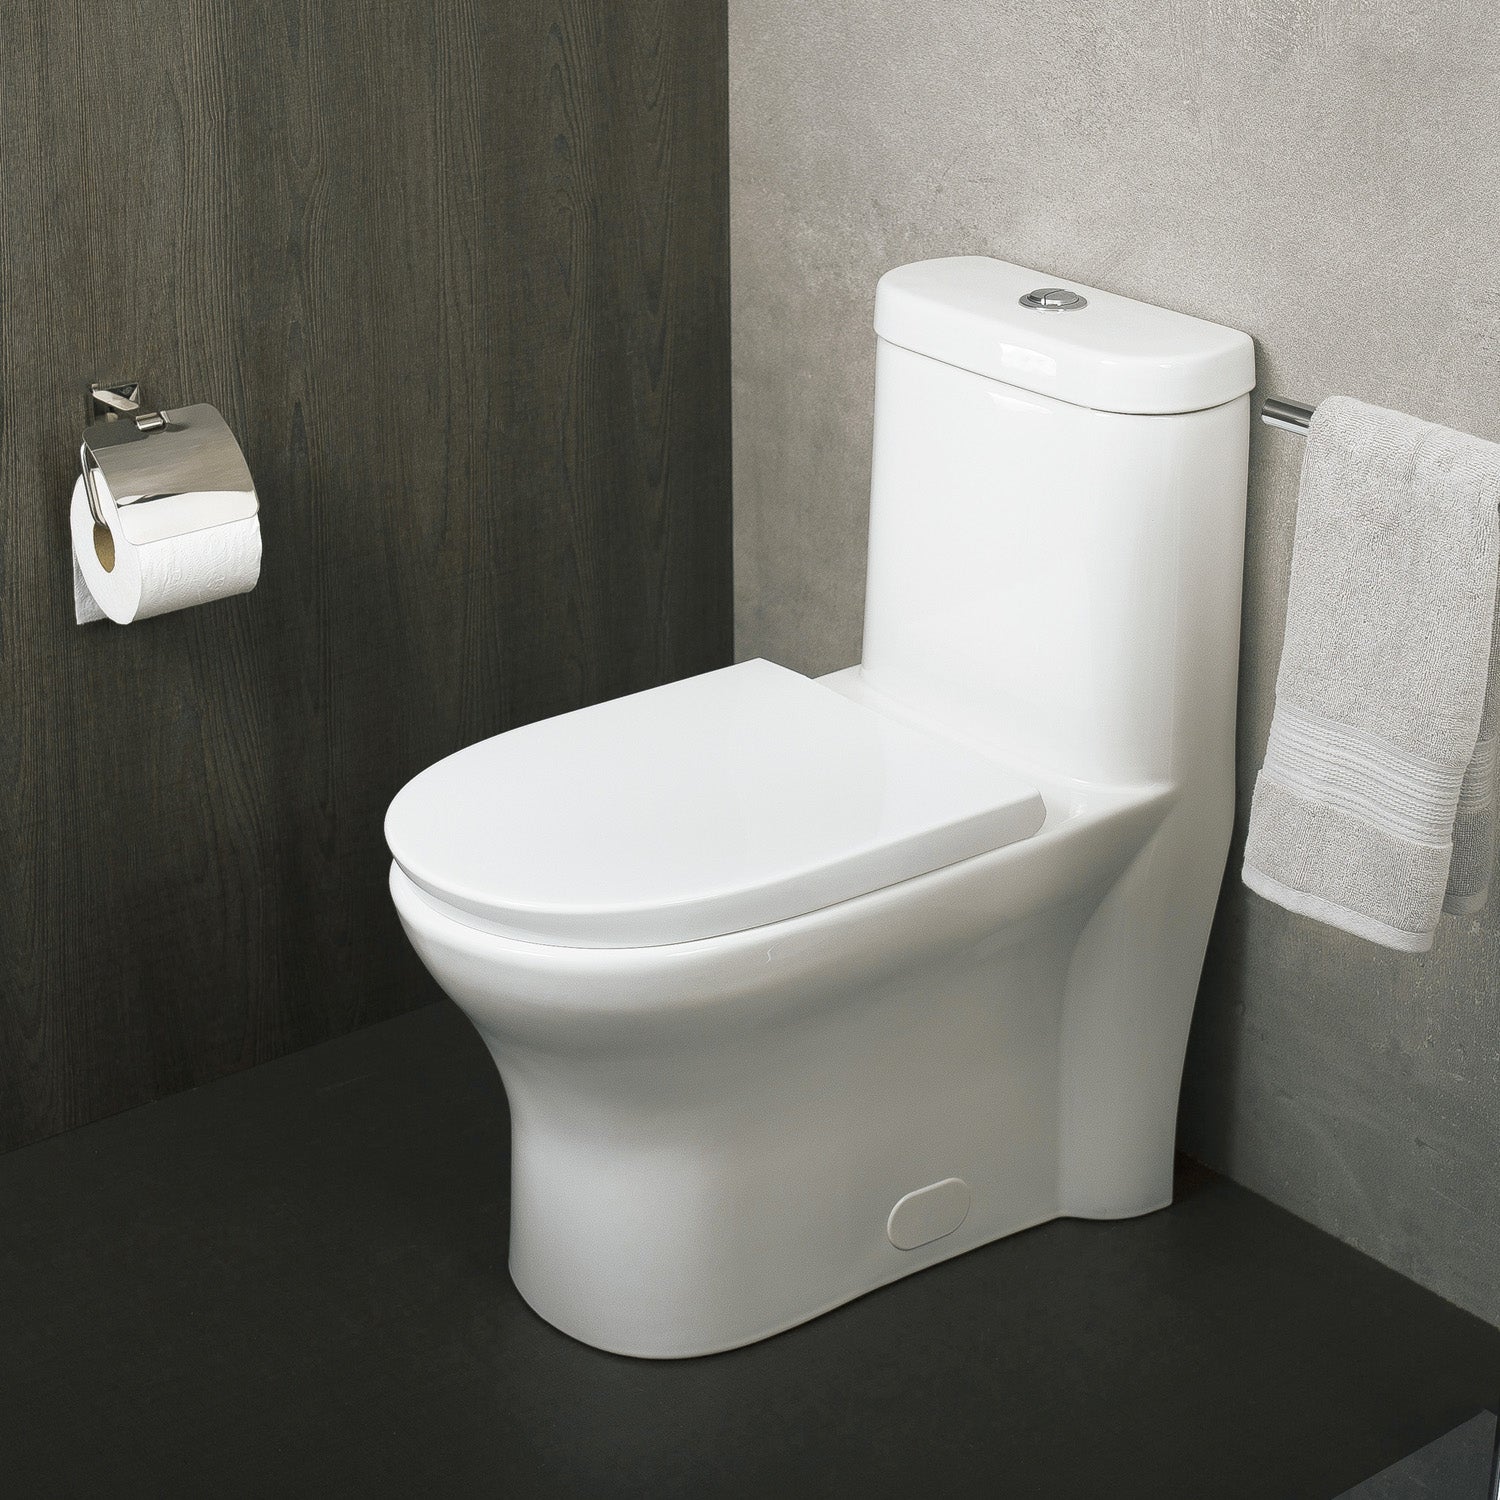 DAX Inodoro ovalado de una pieza con asiento de cierre suave y doble descarga de alta eficiencia, porcelana, acabado blanco, altura 29-1/2 pulgadas (BSN-832)